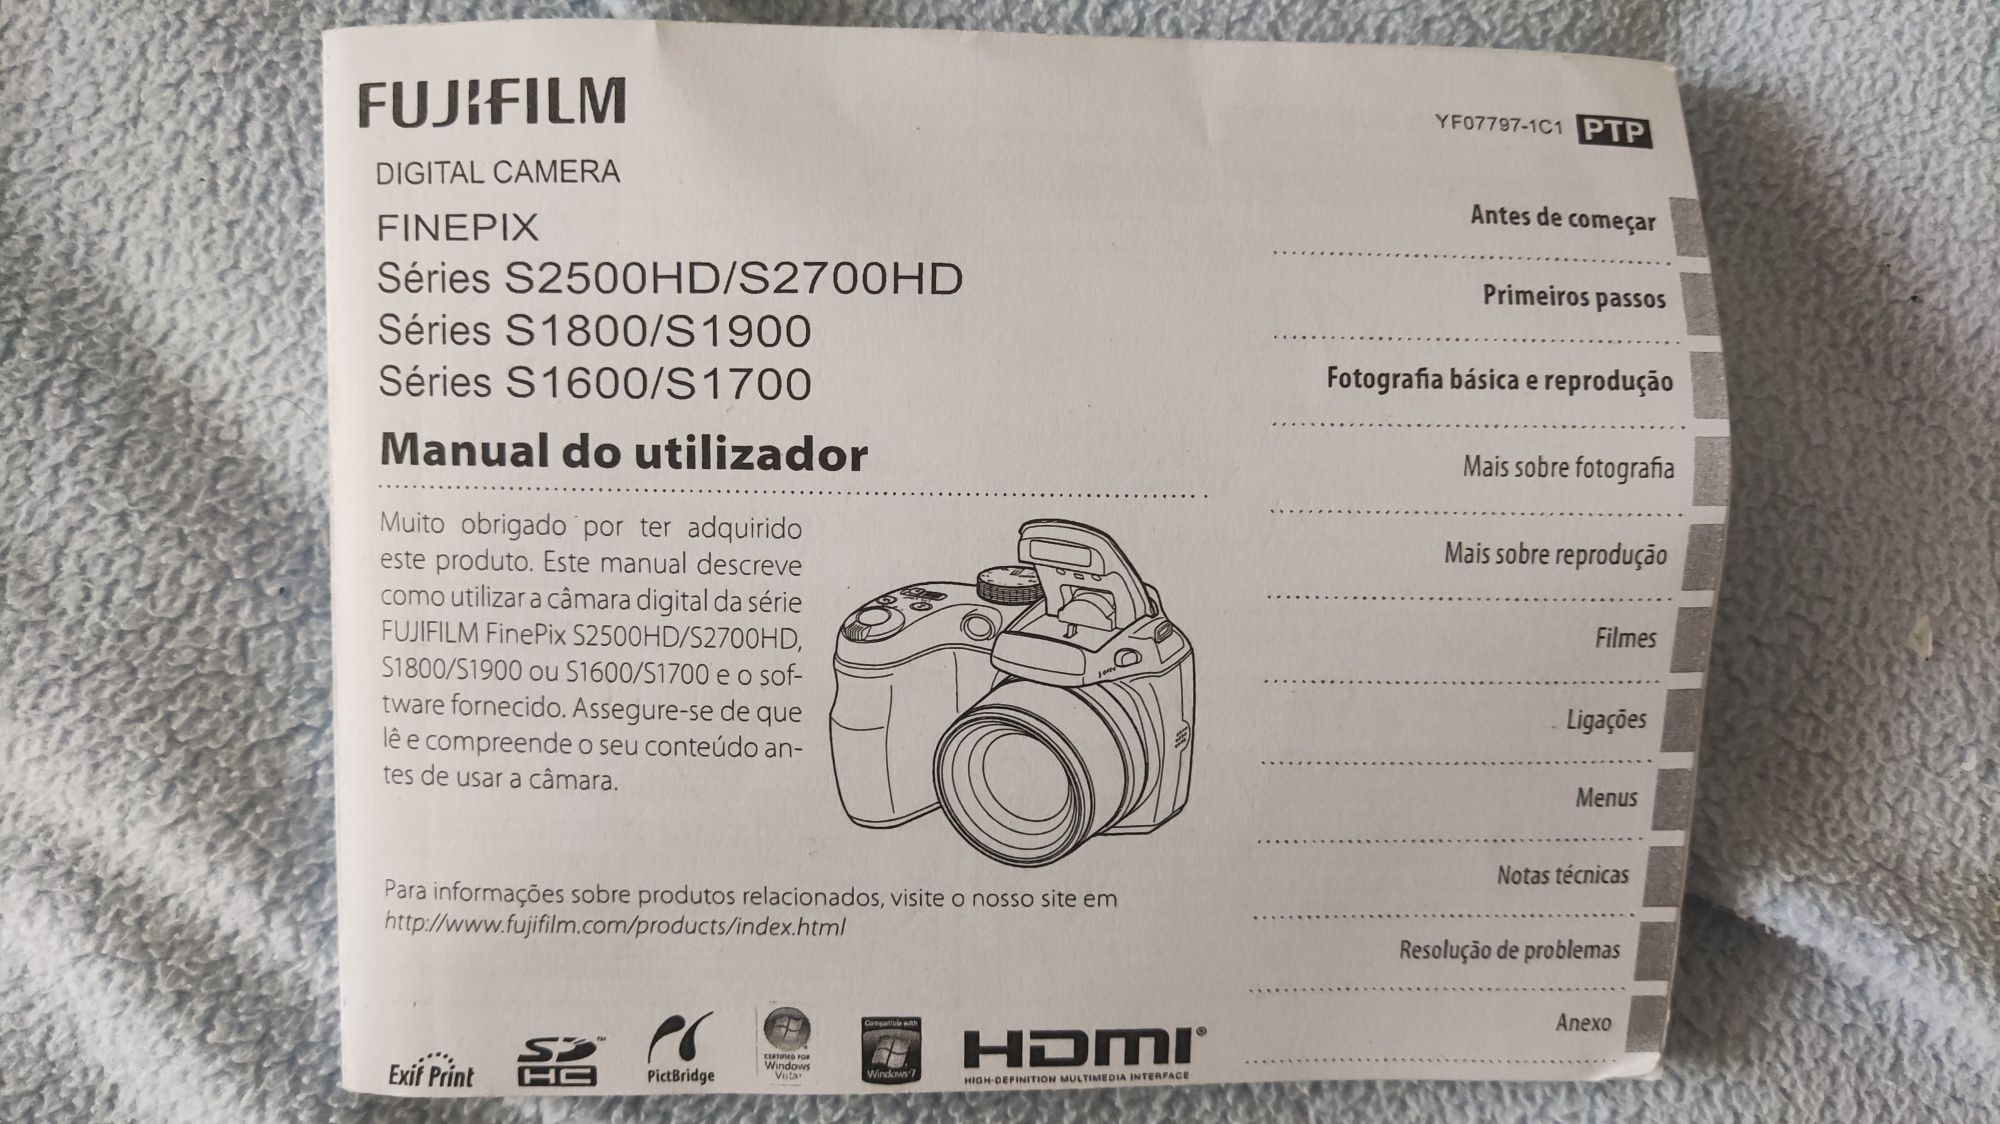 Fujifilm FinePix S1600